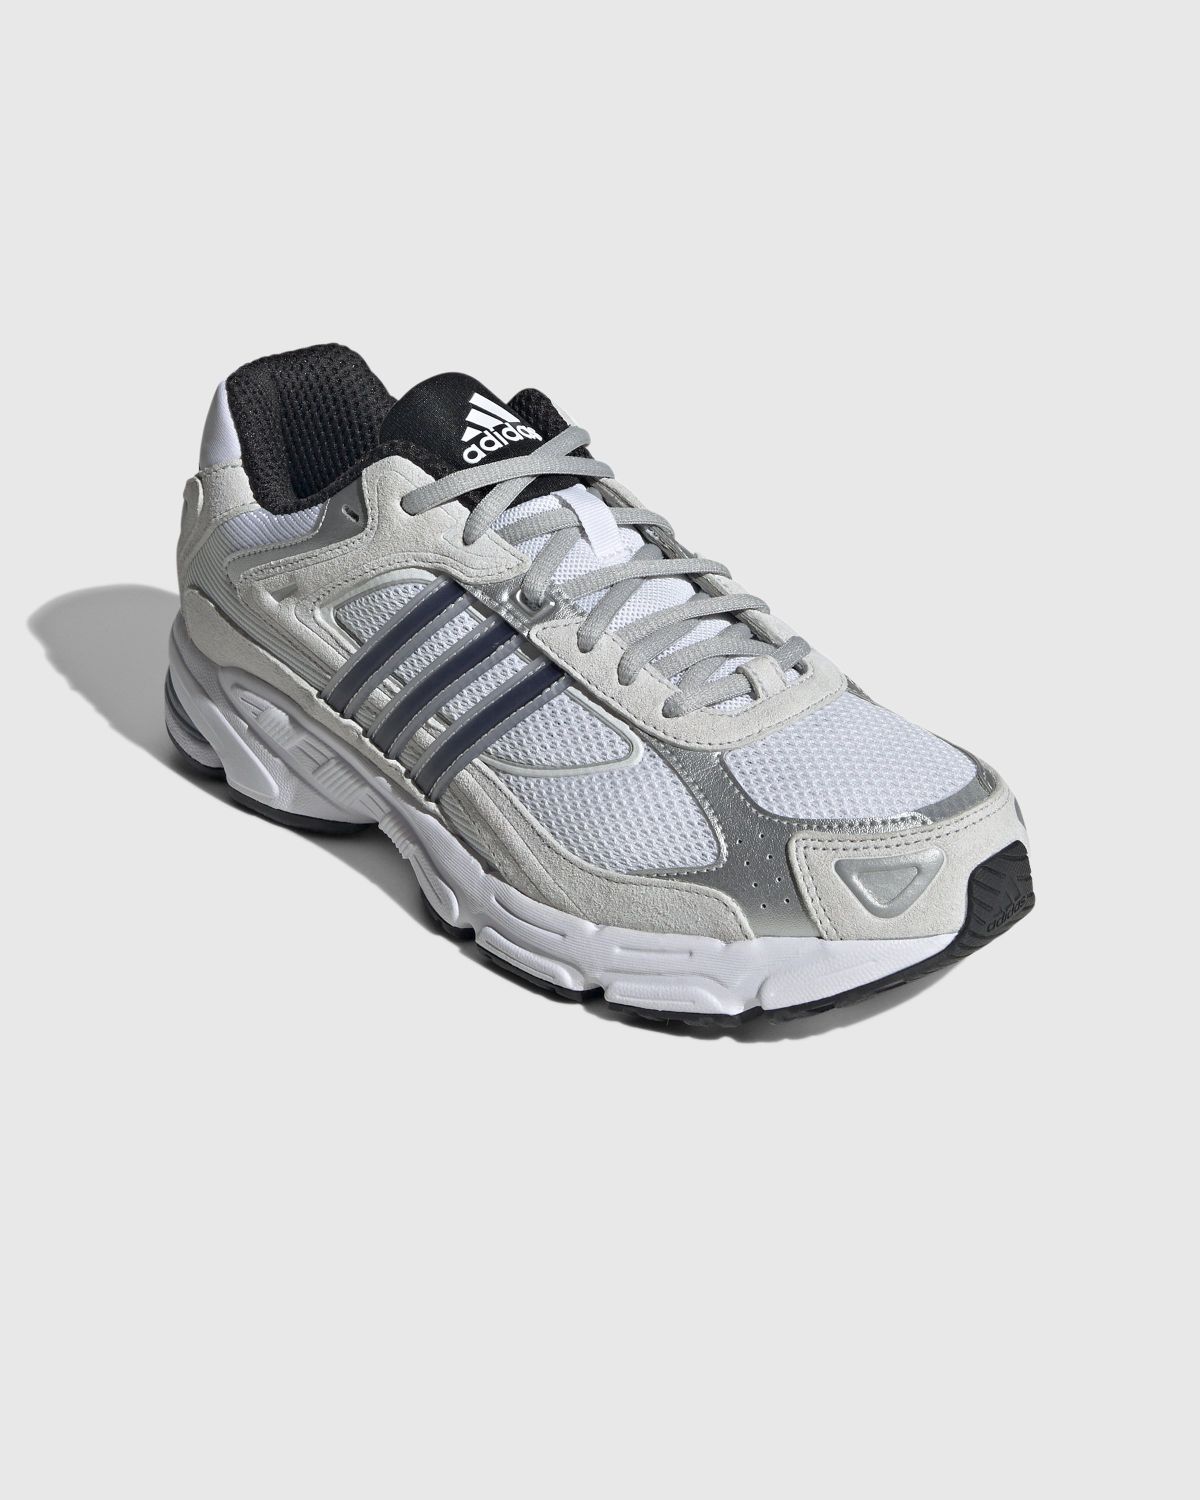 Adidas – Response CL White/Black  - Sneakers - White - Image 3